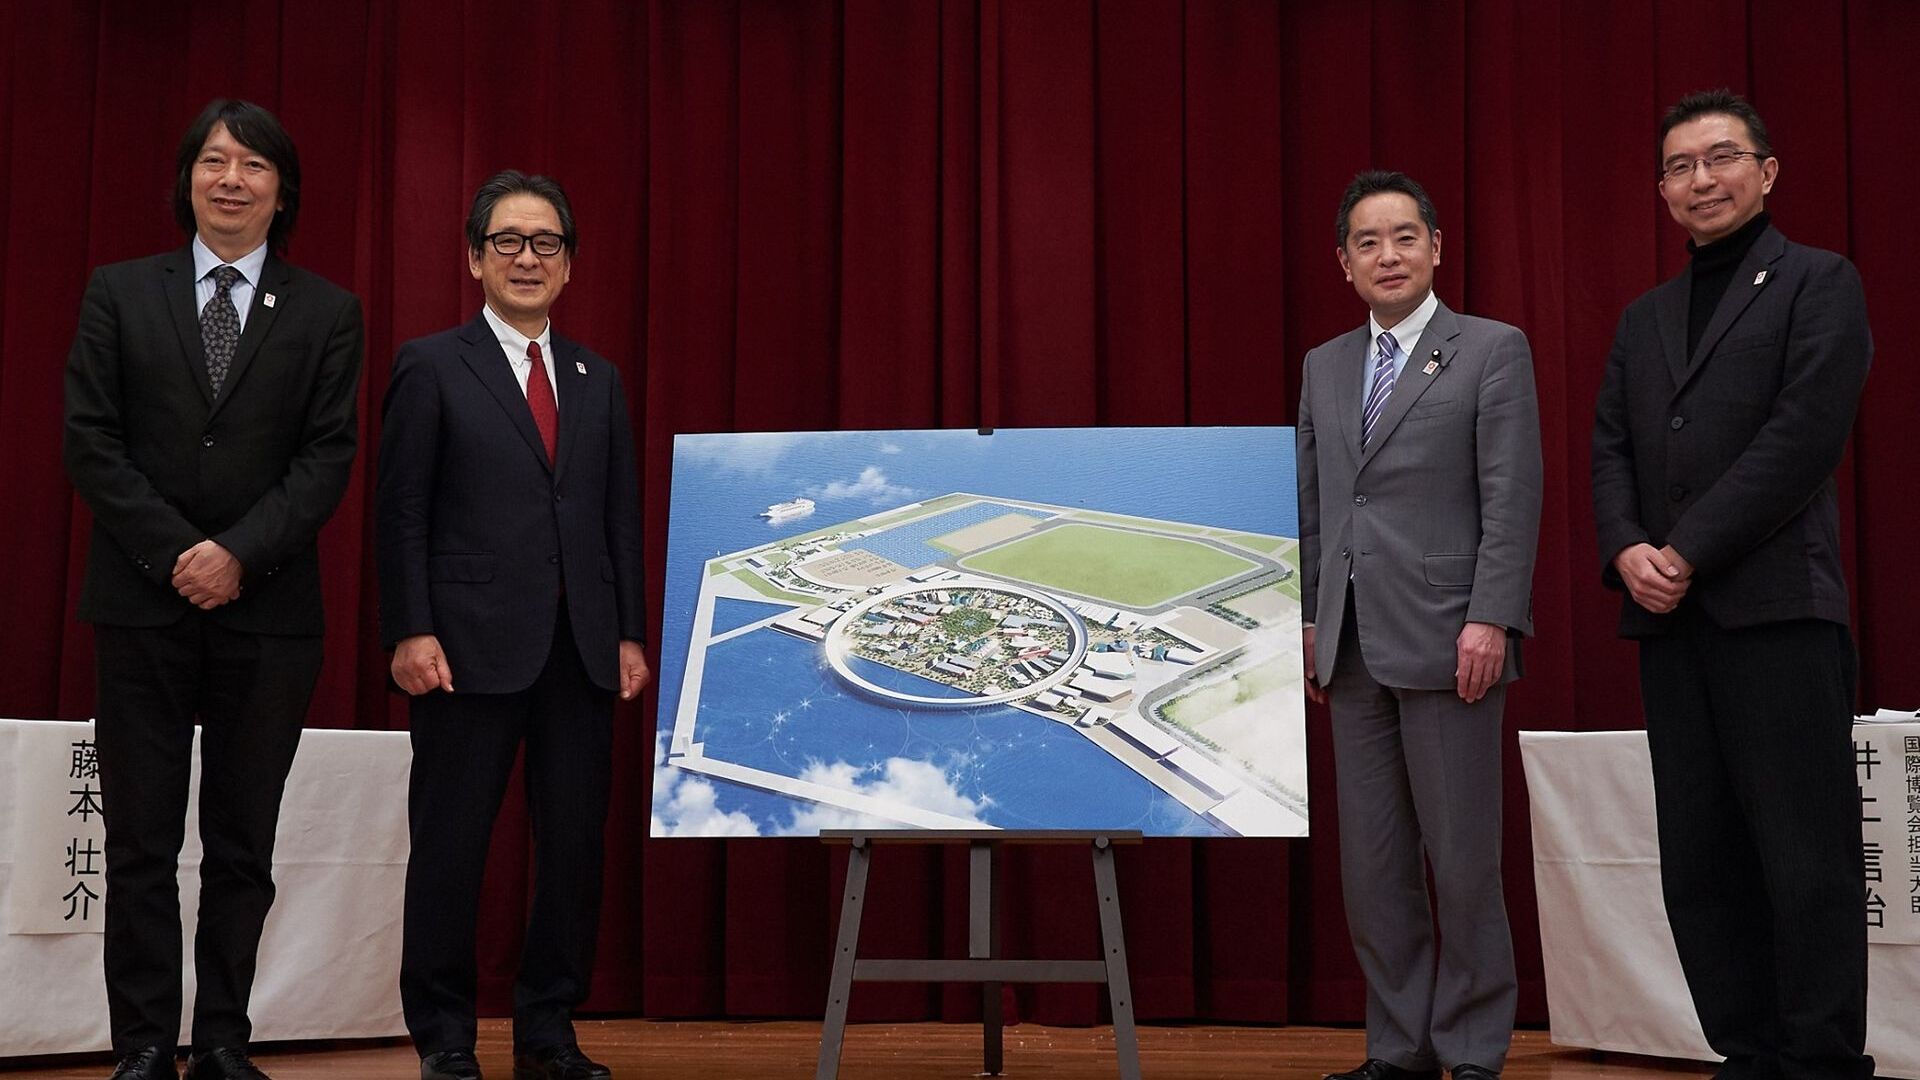 พิธีมอบพื้นที่ที่จะจัดงาน Universal Exposition ประจำปี 2025 ณ เมืองโอซาก้า (ประเทศญี่ปุ่น)